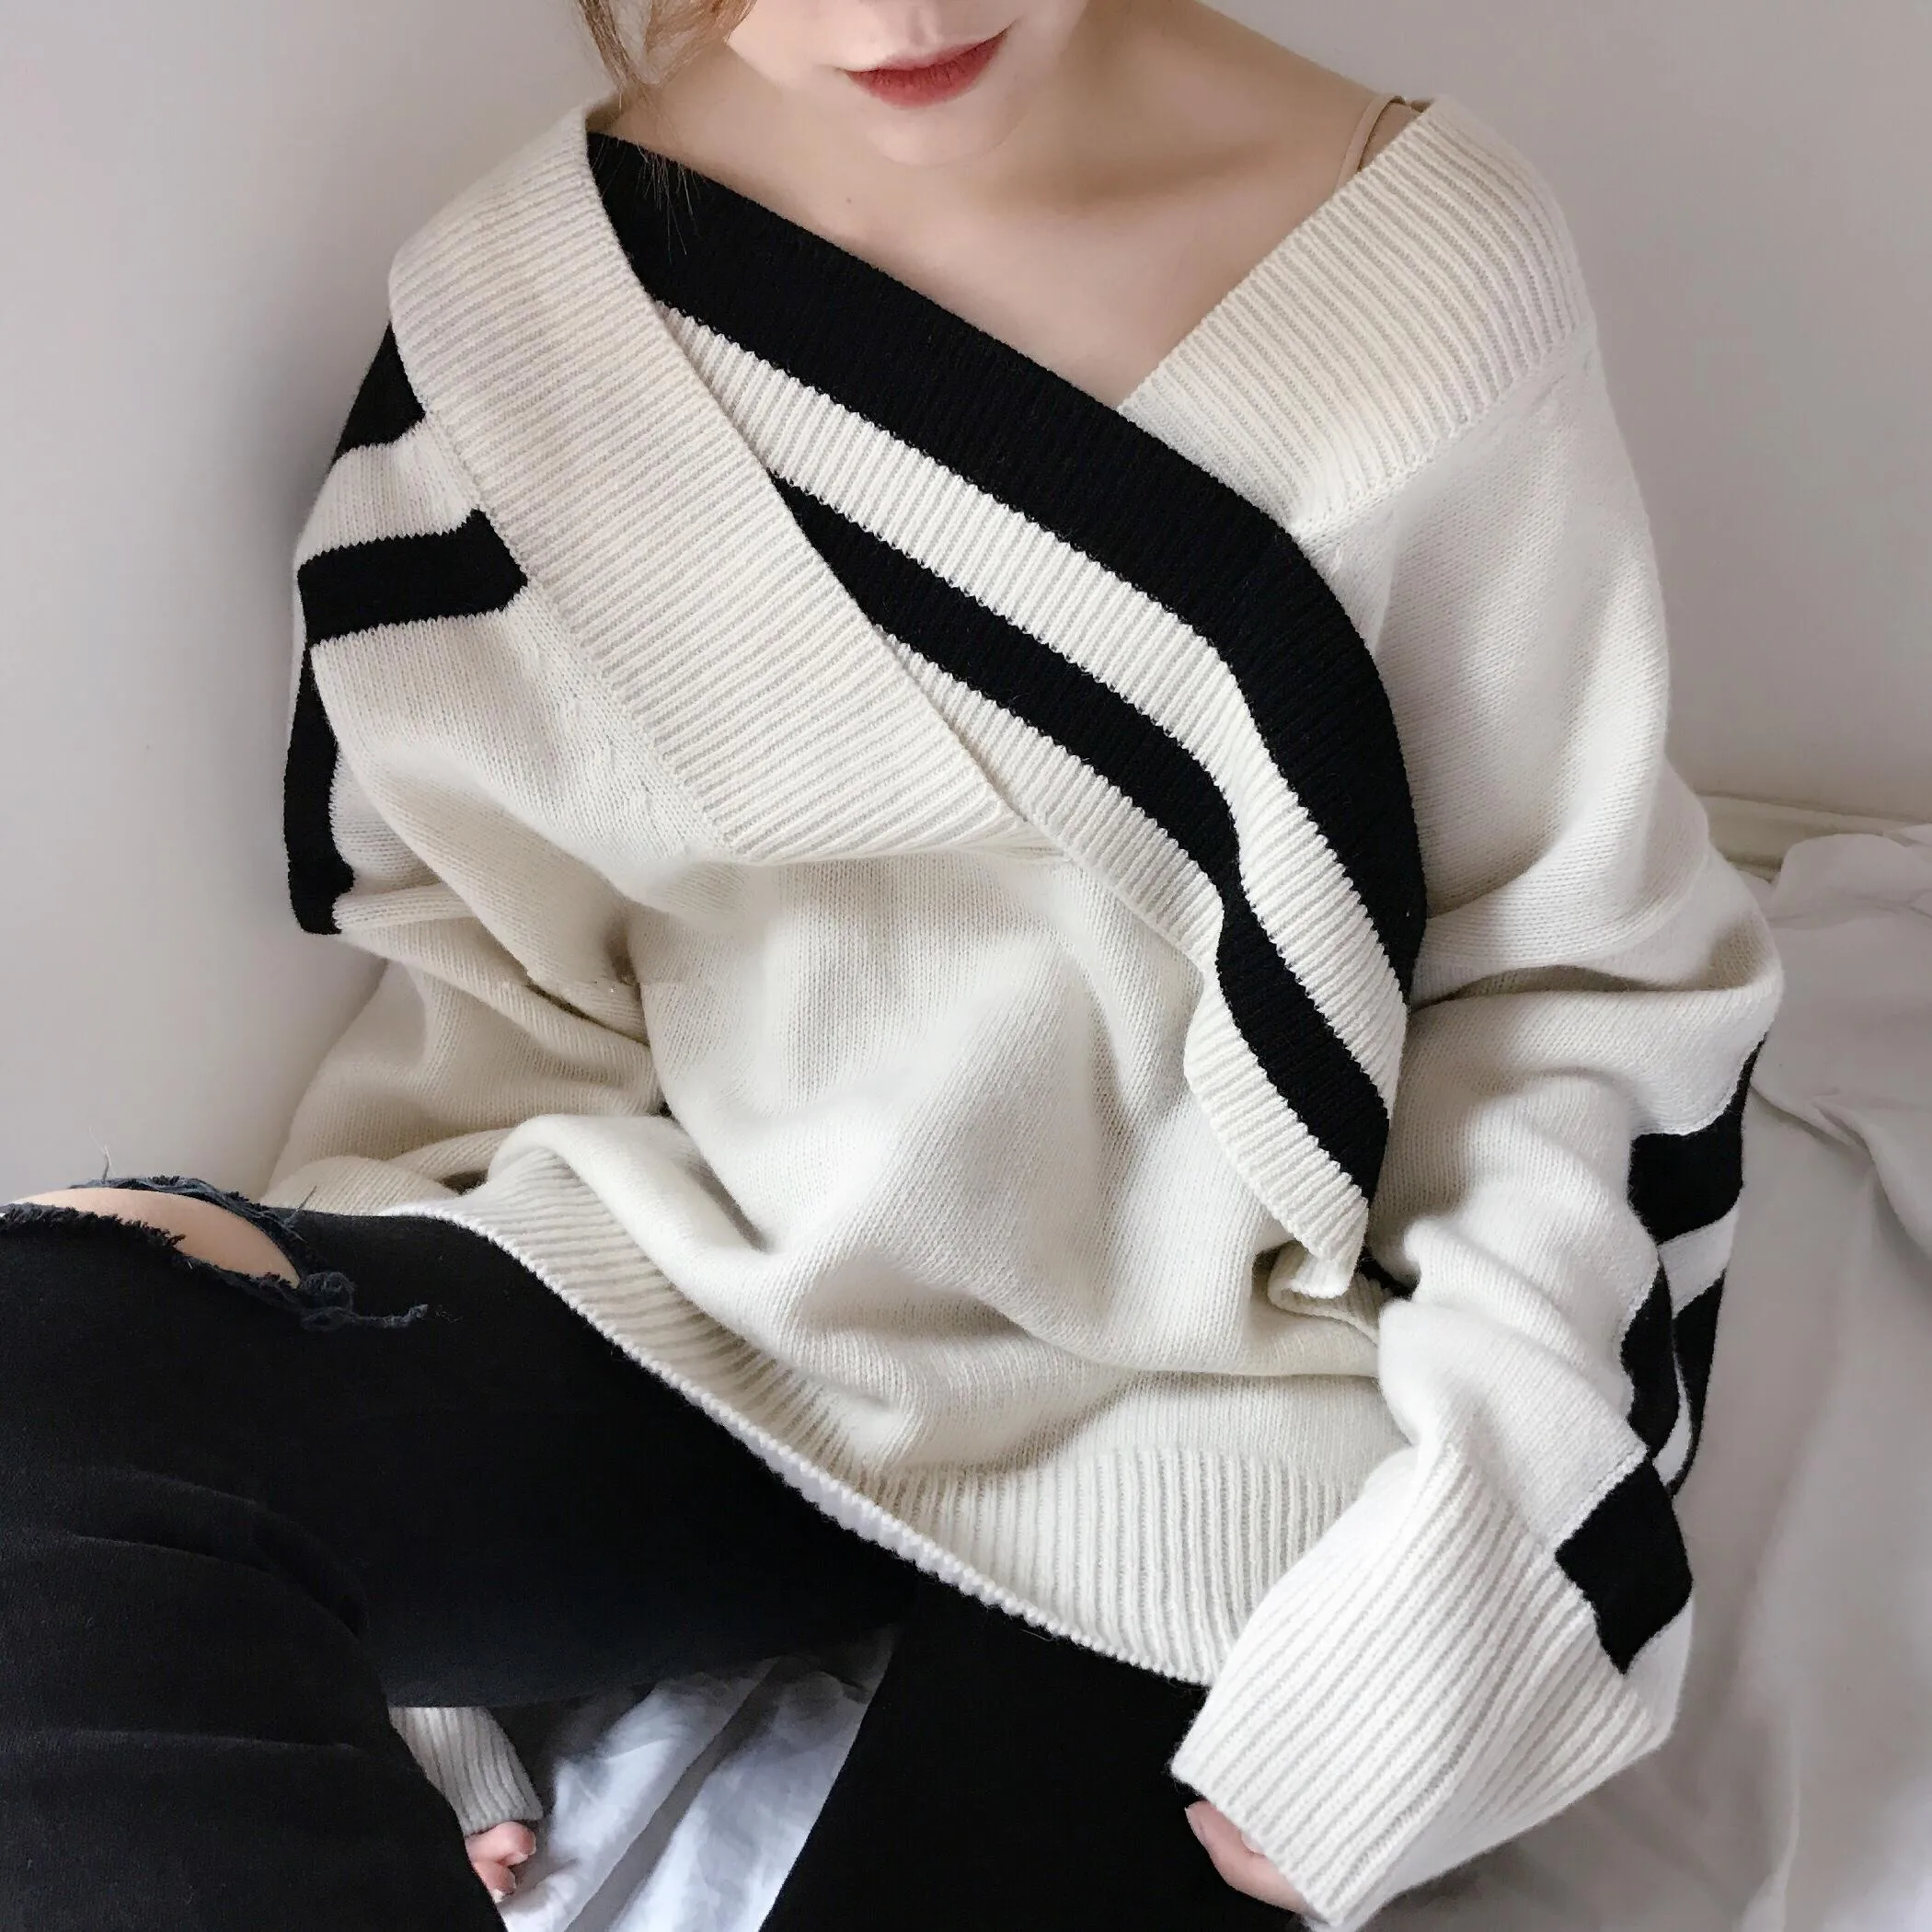 SuperAen корейский стиль женские пуловеры свитера Мода Осень новинка дикий женксие кофты v-образным вырезом повседневные женские вязаные топы